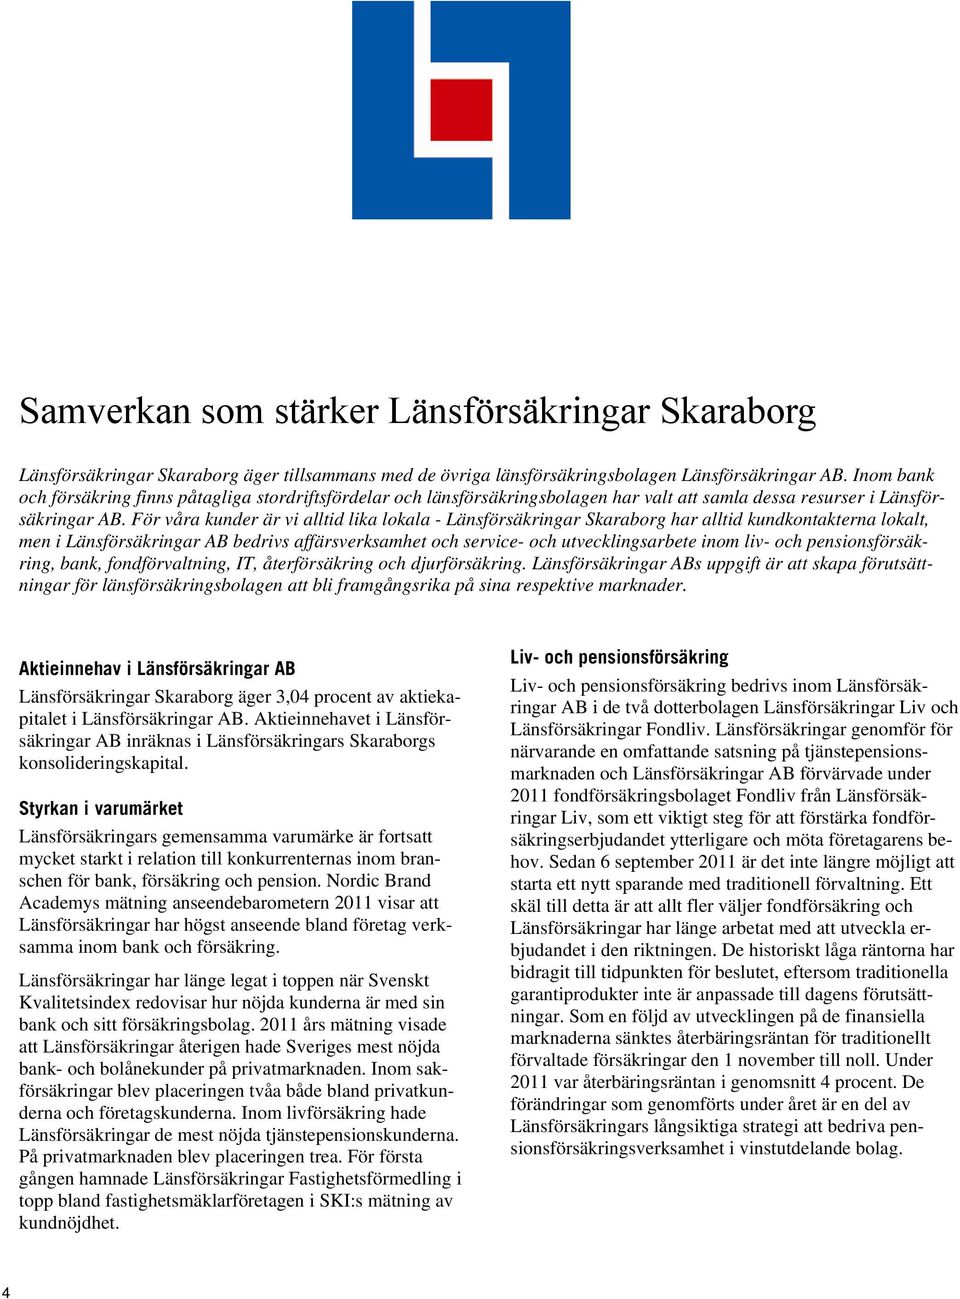 För våra kunder är vi alltid lika lokala - Länsförsäkringar Skaraborg har alltid kundkontakterna lokalt, men i Länsförsäkringar AB bedrivs affärsverksamhet och service- och utvecklingsarbete inom